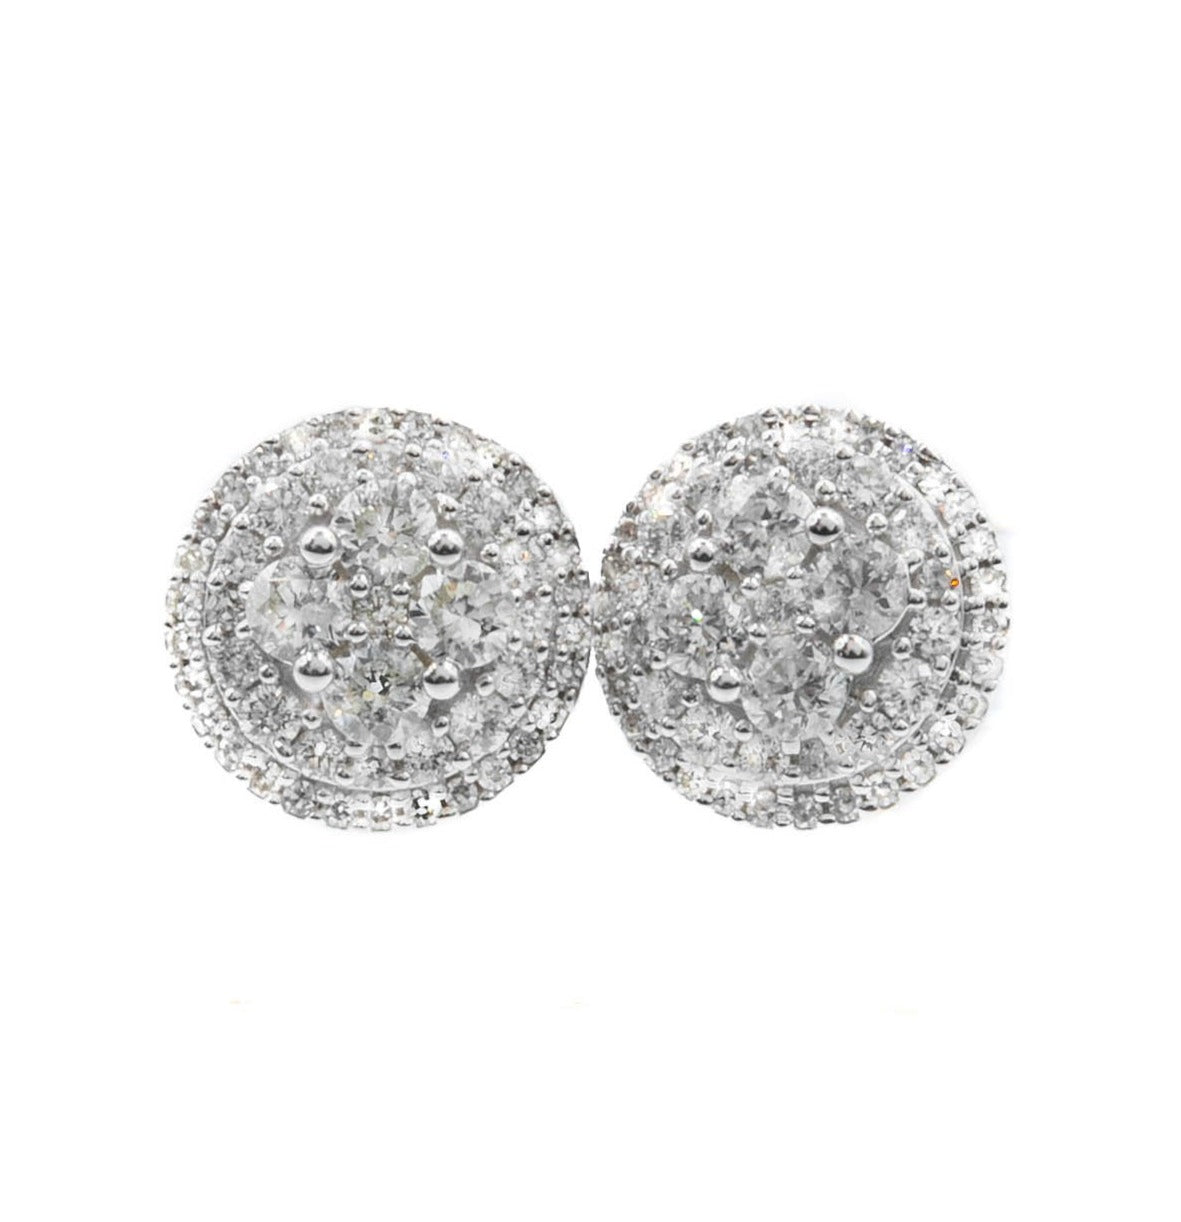 14k White Gold Diamond Stud Earrings 1.05ctw